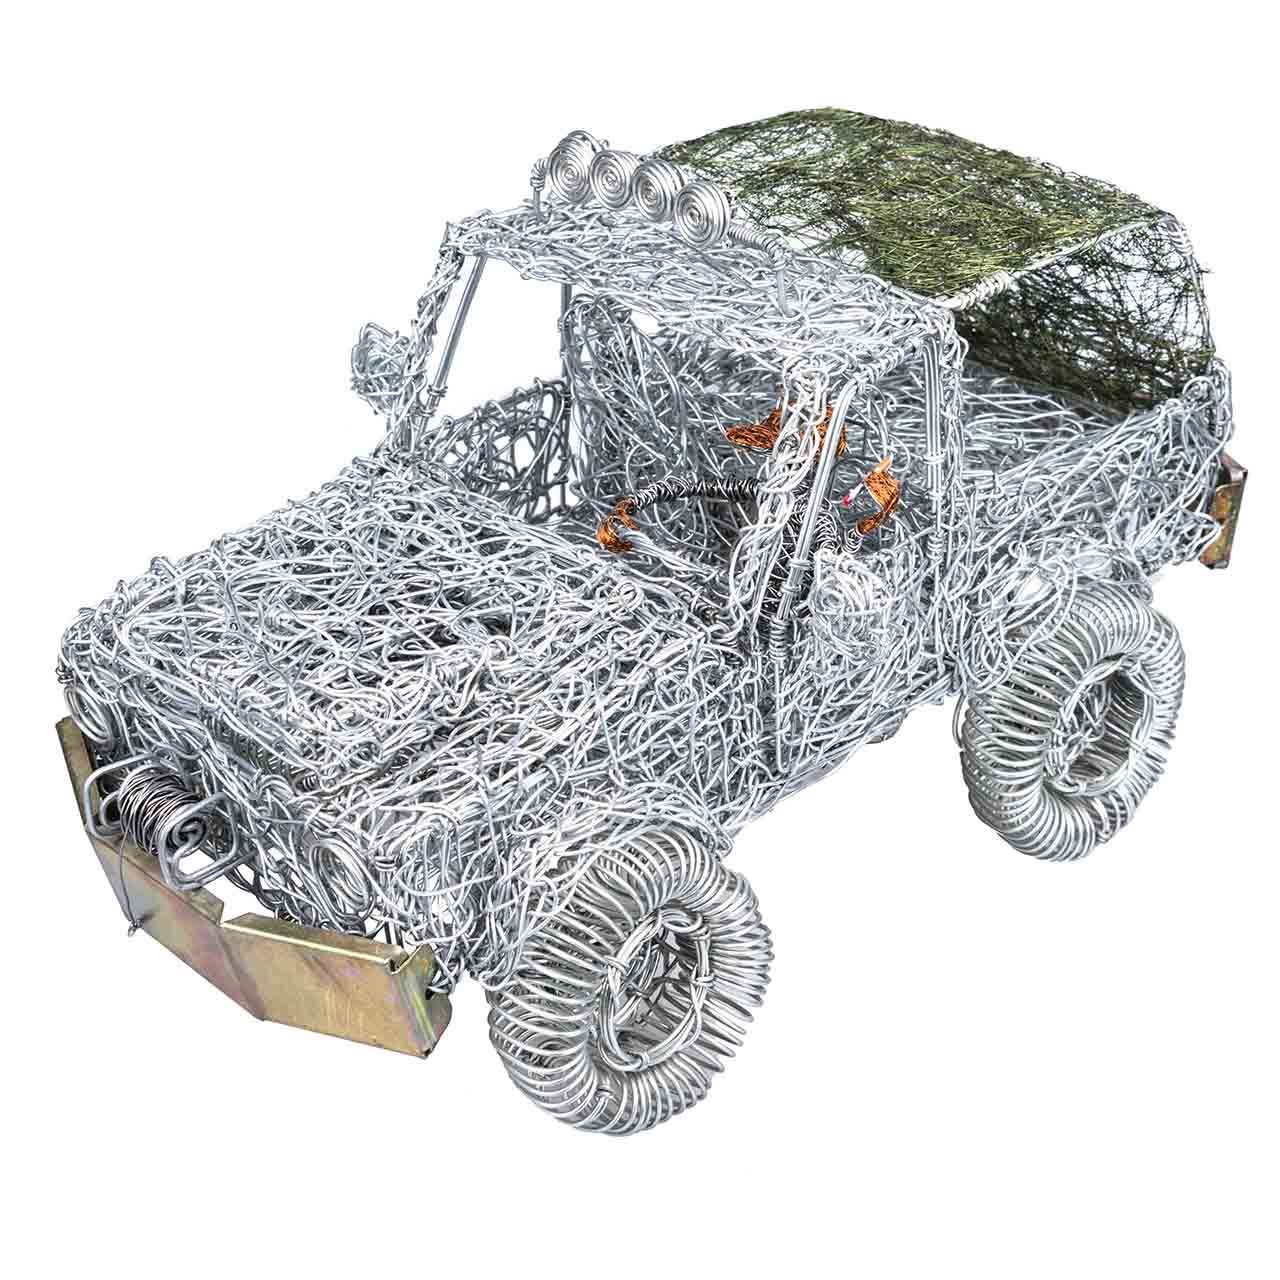 مجسمه عکسیم مدل Jeep